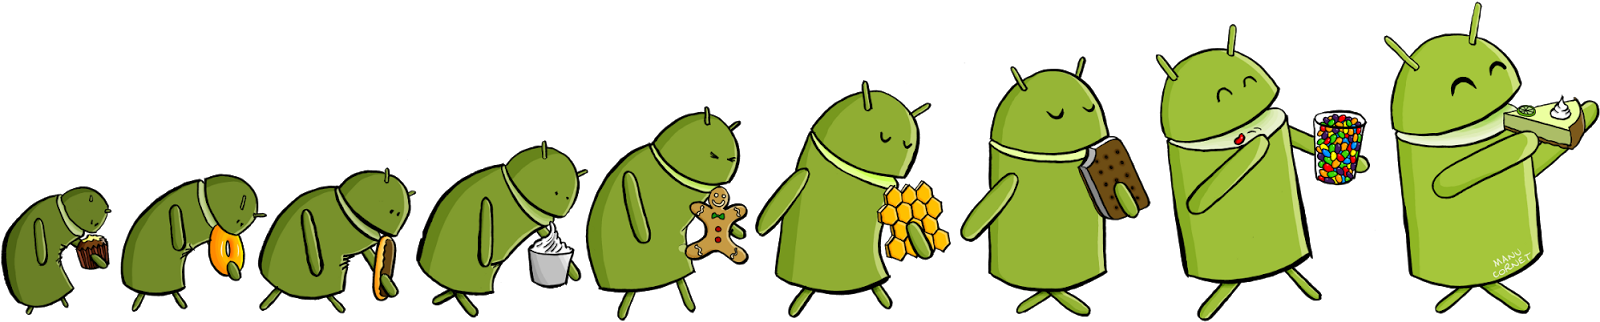 Humor: La Evolución De Android